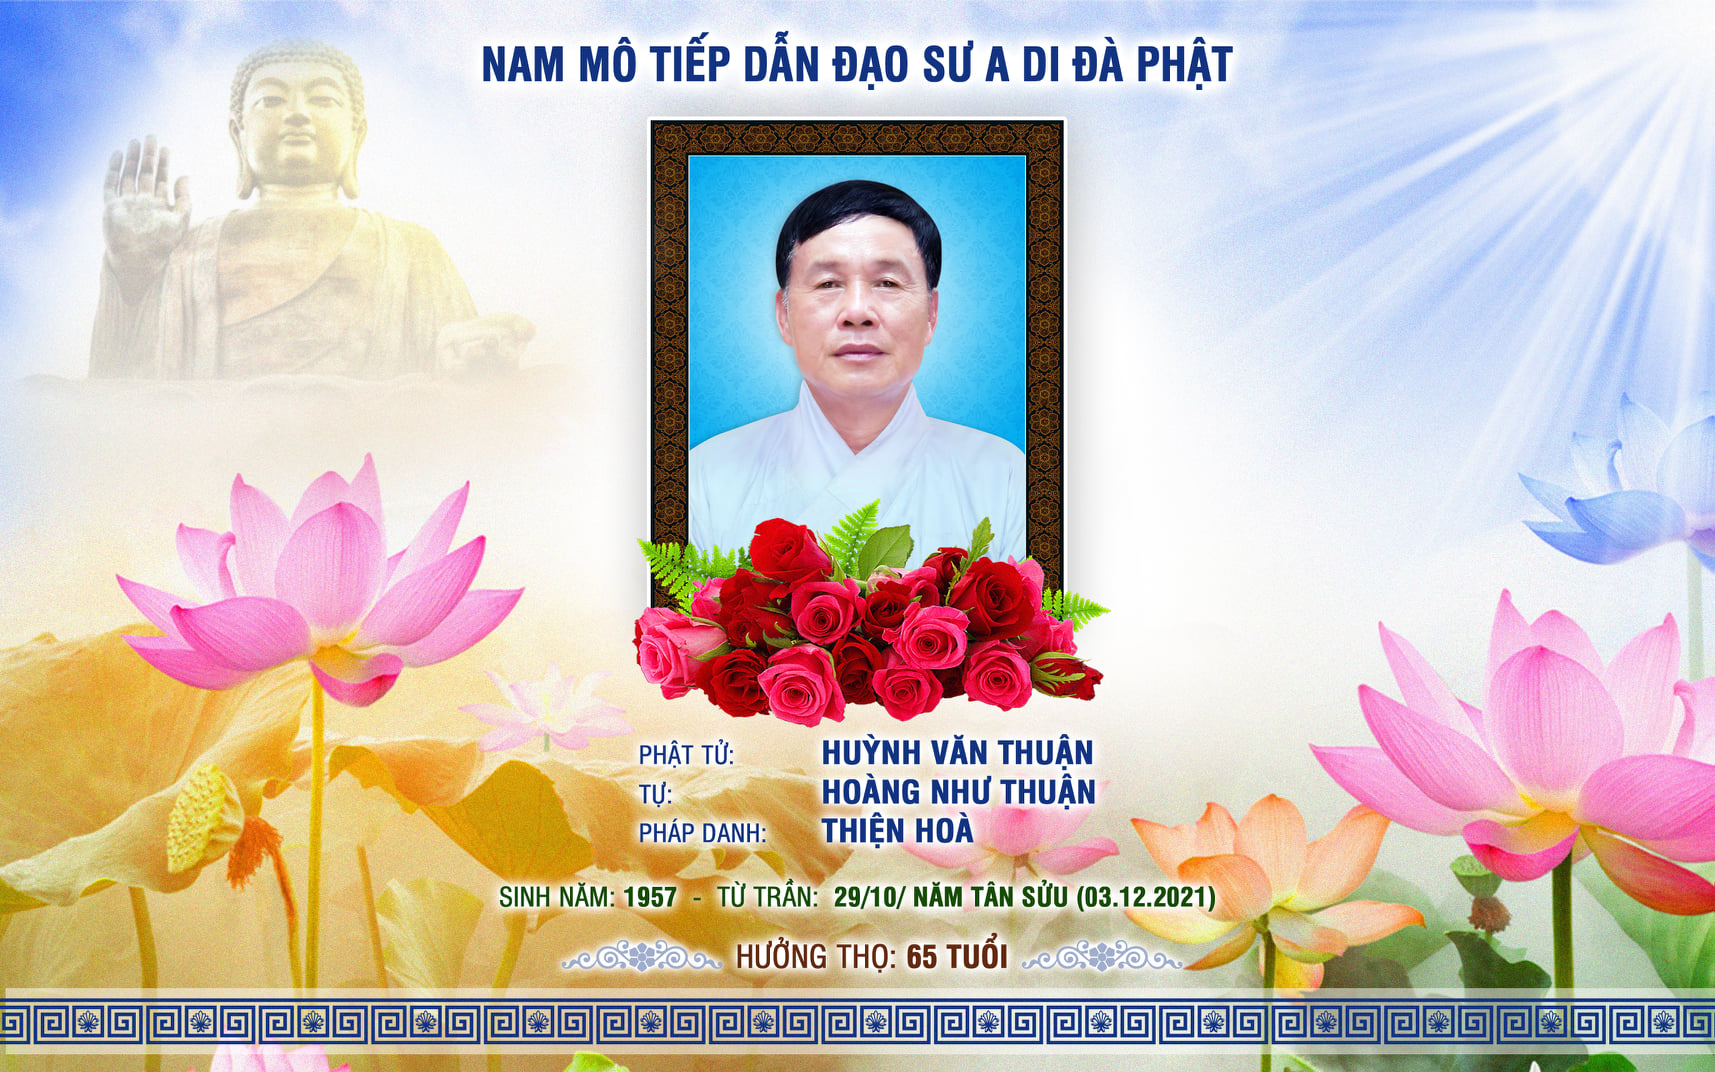 Phật tử: Huỳnh Văn Thuận, Tự: Hoàng Như Thuận Pháp danh: Thiện Hoà Trưởng Ban Hộ tự Tổ đình Phước Viên, đã mãn duyên trần thế vào lúc 22h20 ngày 29 tháng 10 năm Tân Sửu (nhằm ngày 03.12.2021).